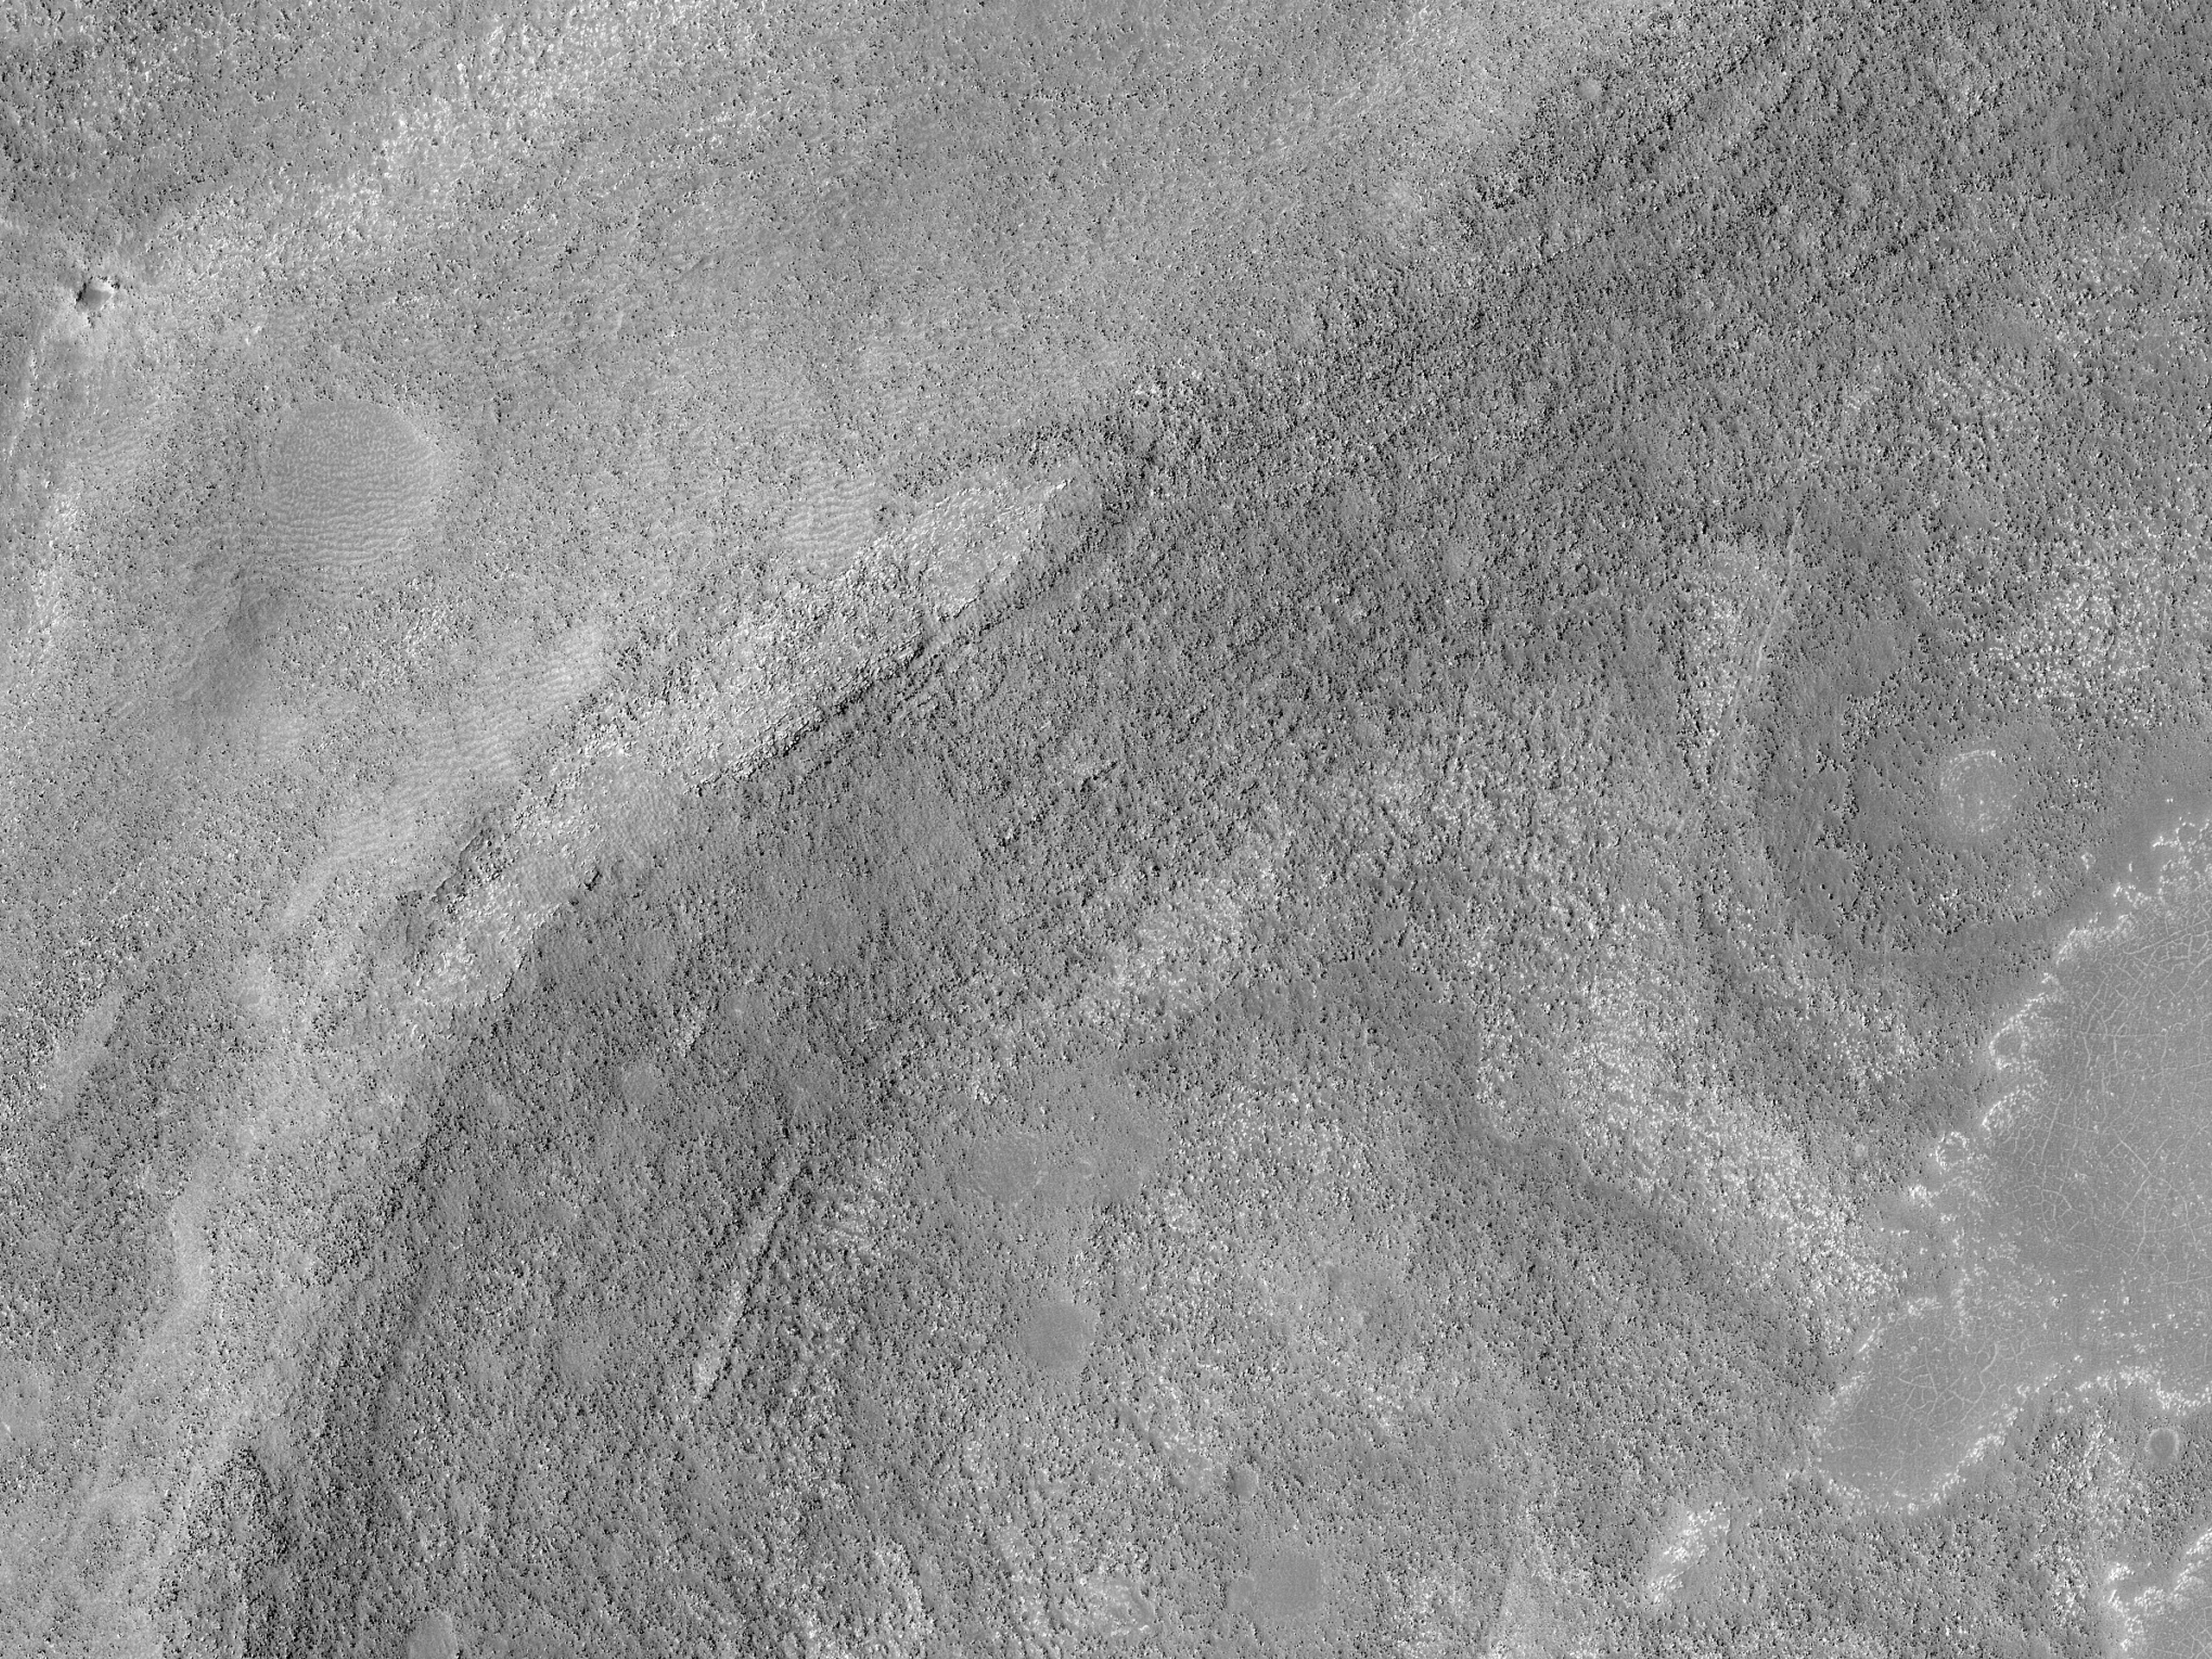 Réteges, kanyargó gerinc az Argyre Planitia síkságon